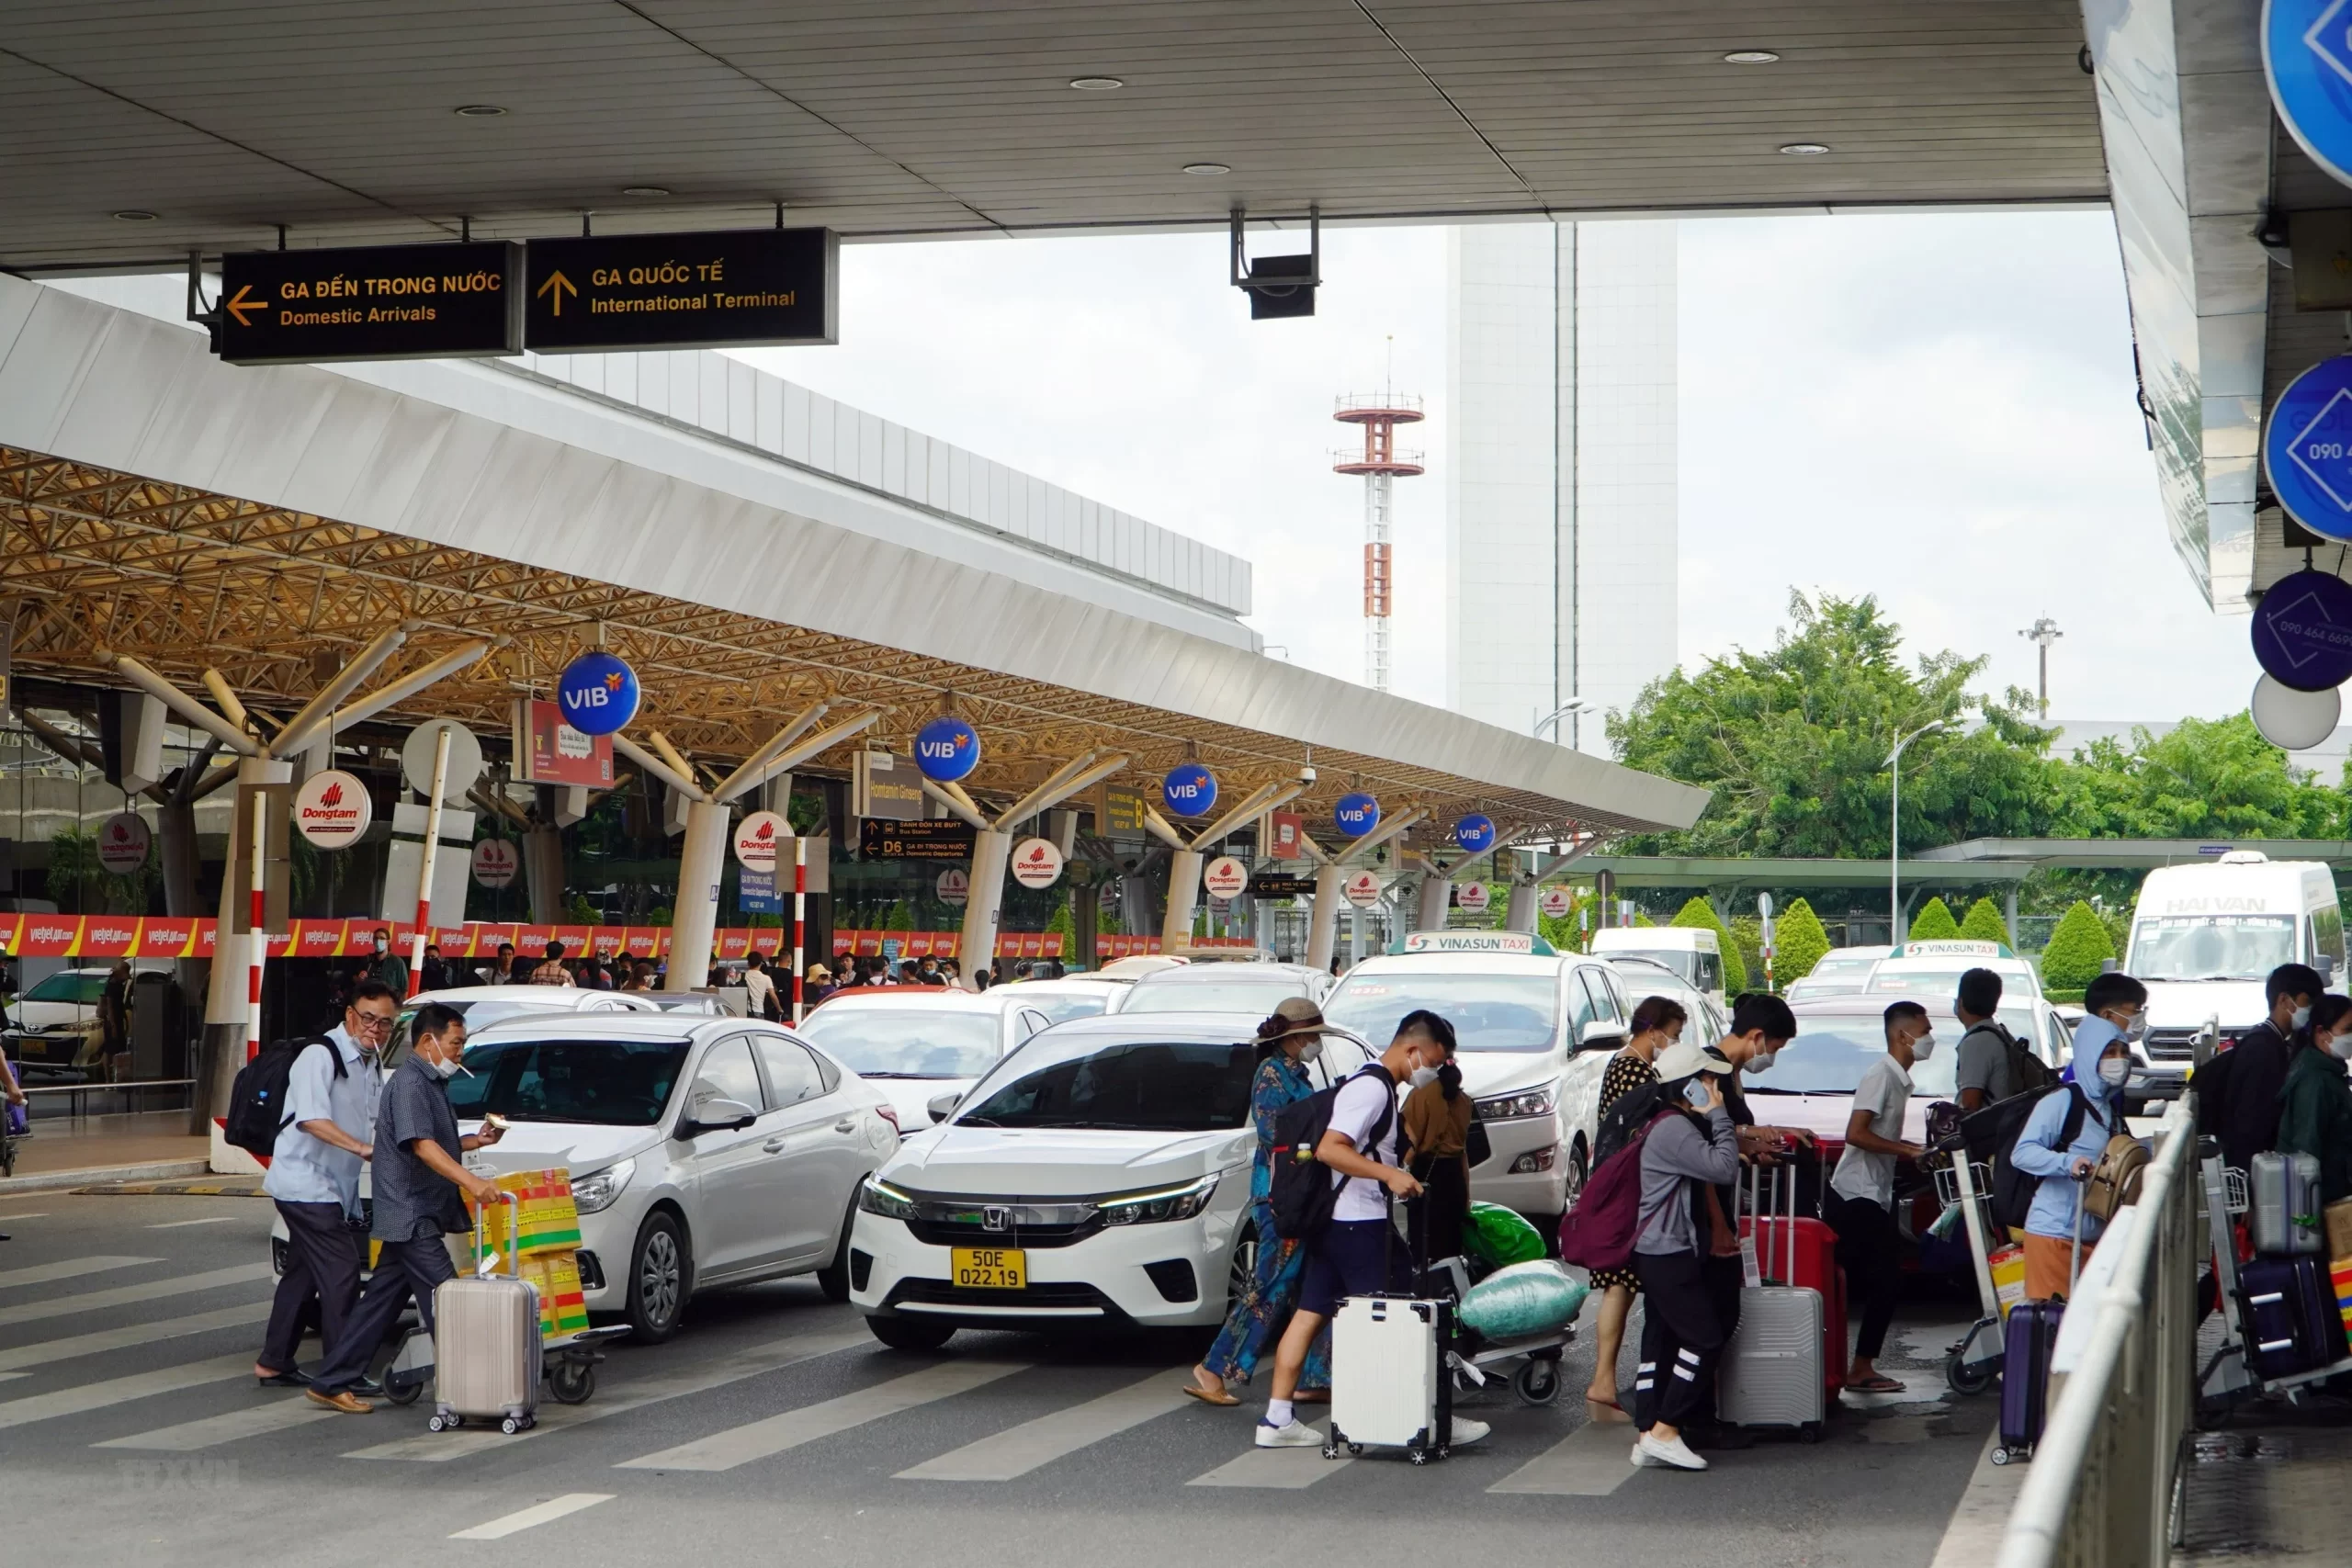 Tại sân bay Tân Sơn Nhất có rất nhiều hình thức di chuyển để bạn lựa chọn